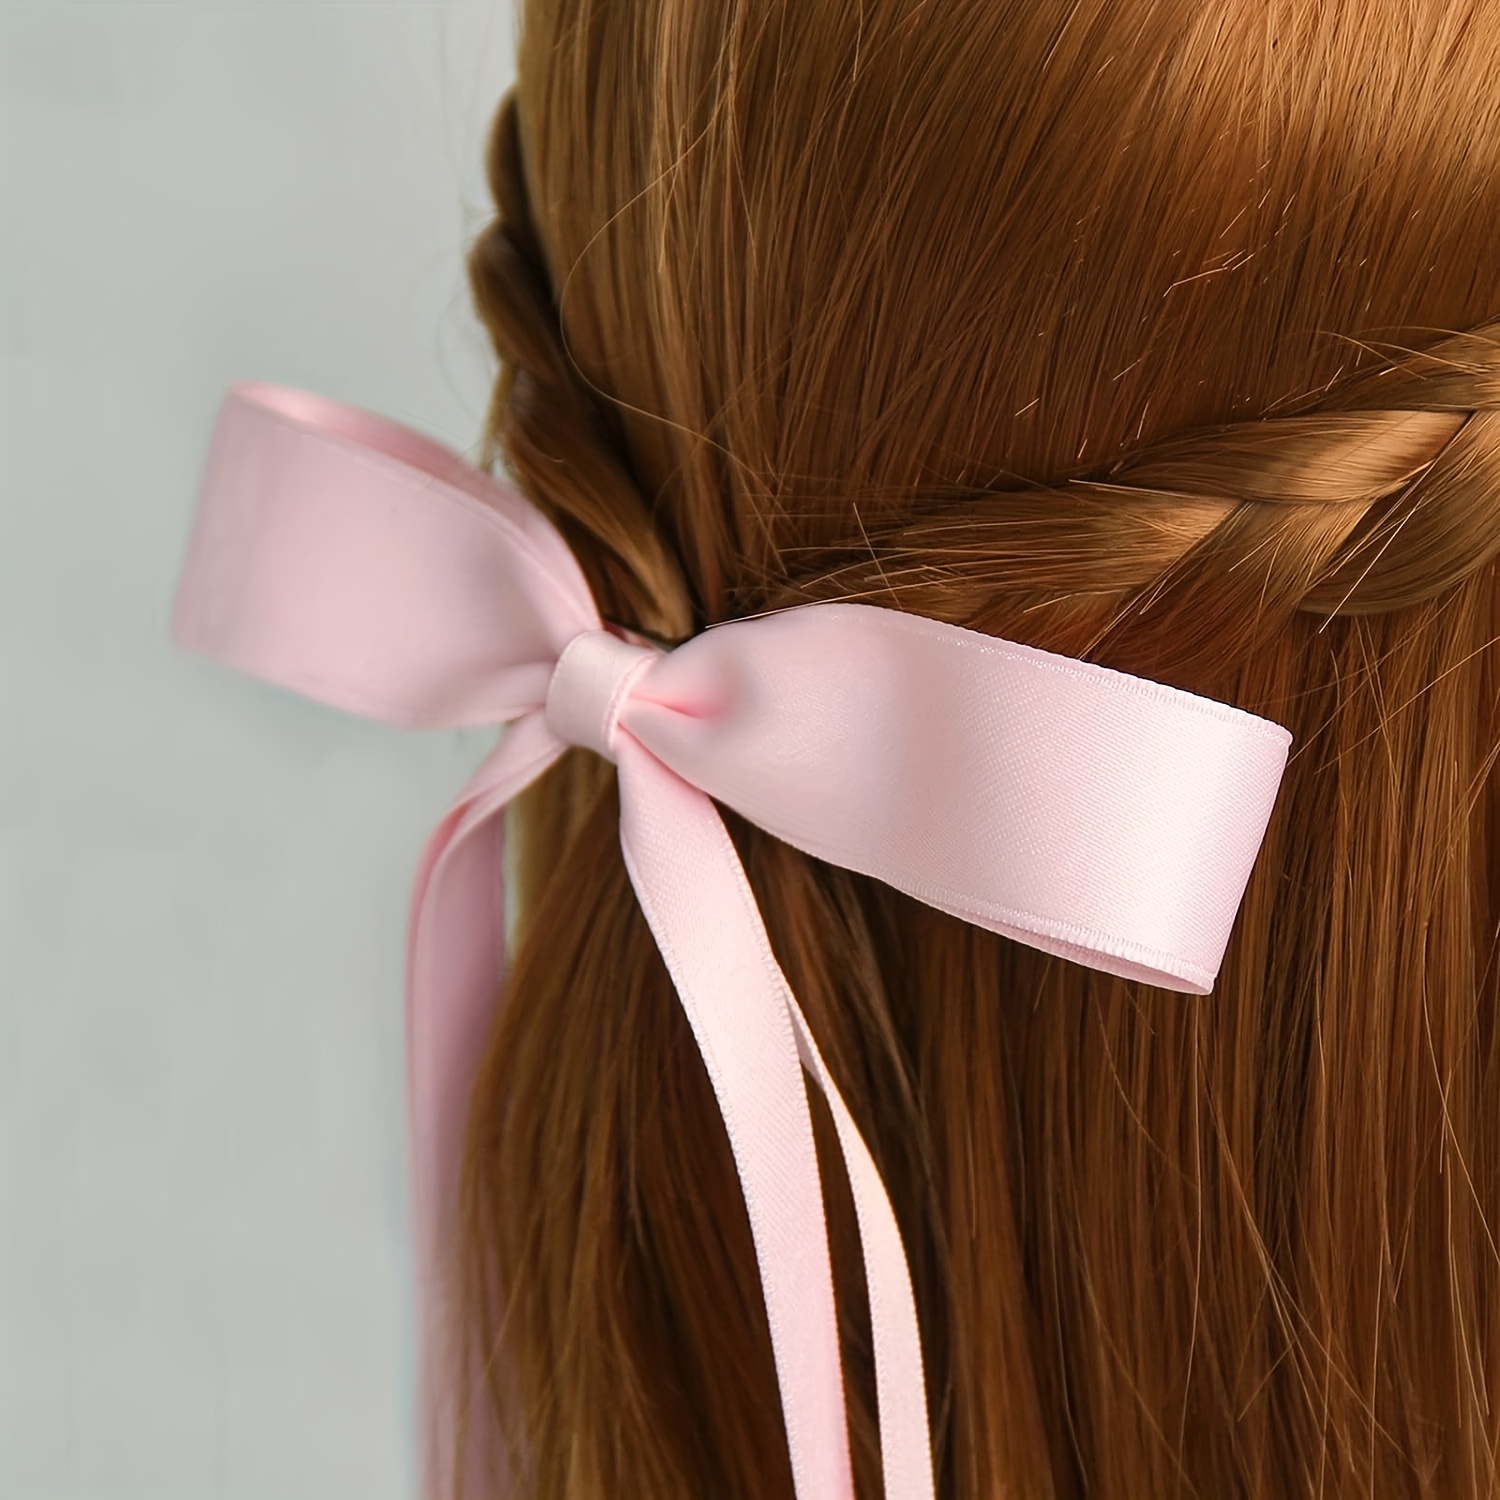 4pcs/set Elegant Ribbon Bow Decor Hair Clips, Bobby Pins, Hairpins Sweet Cute Bowknot Hair Accessories,Temu